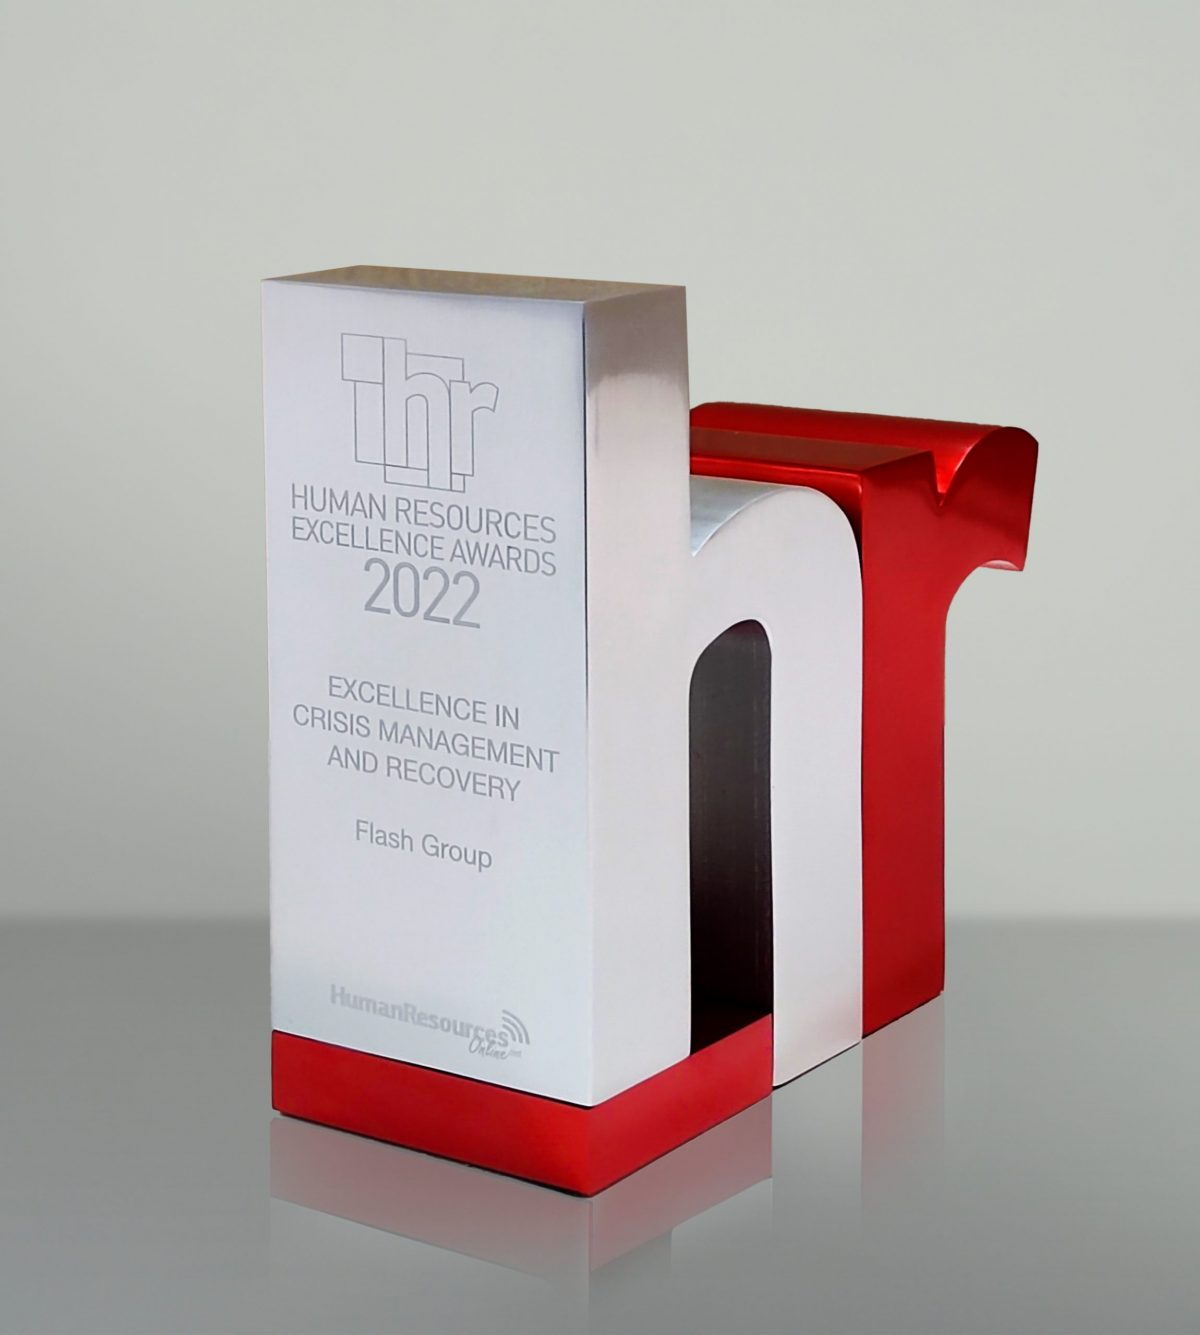 แฟลช กรุ๊ป คว้ารางวัล ความเป็นเลิศด้านการบริหารจัดการองค์กร และบุคลากรในสถานการณ์วิกฤตจากเวที HR Excellence Awards 2022